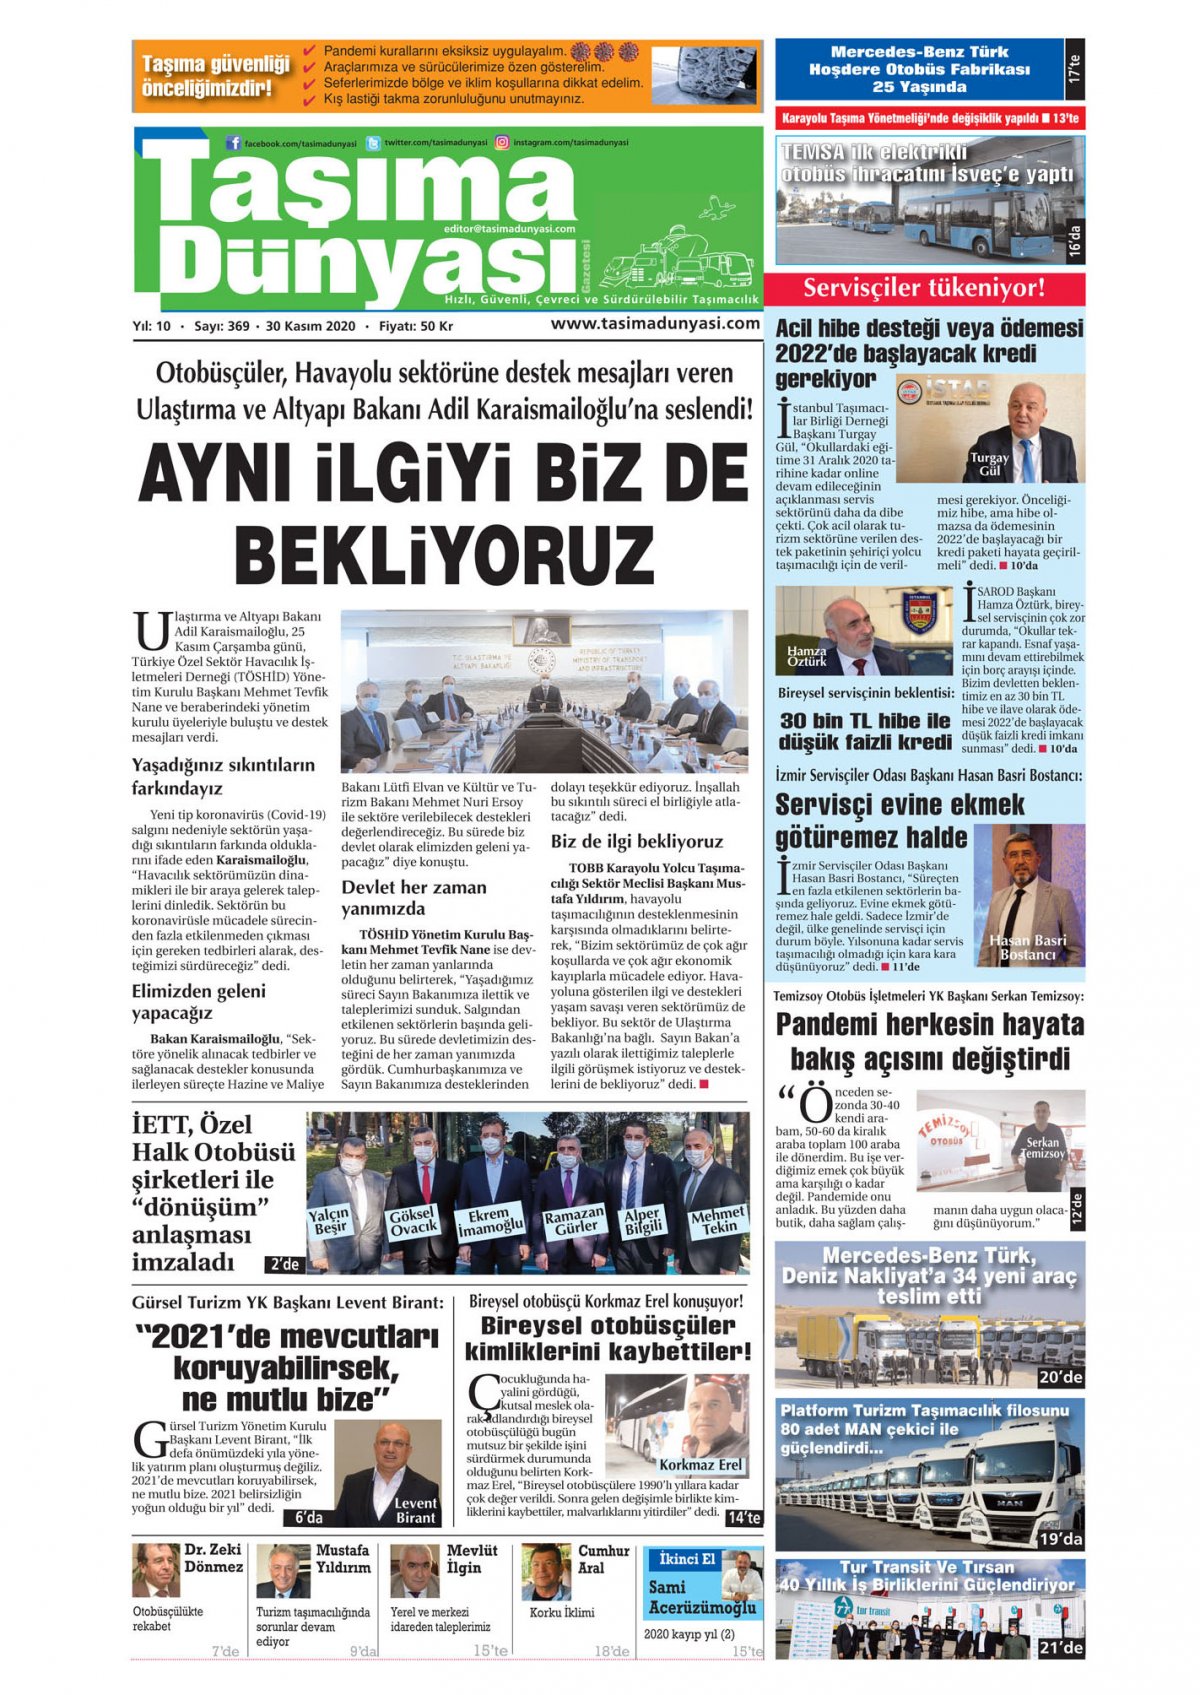 Taşıma Dünyası Gazetesi - 30.11.2020 Manşeti